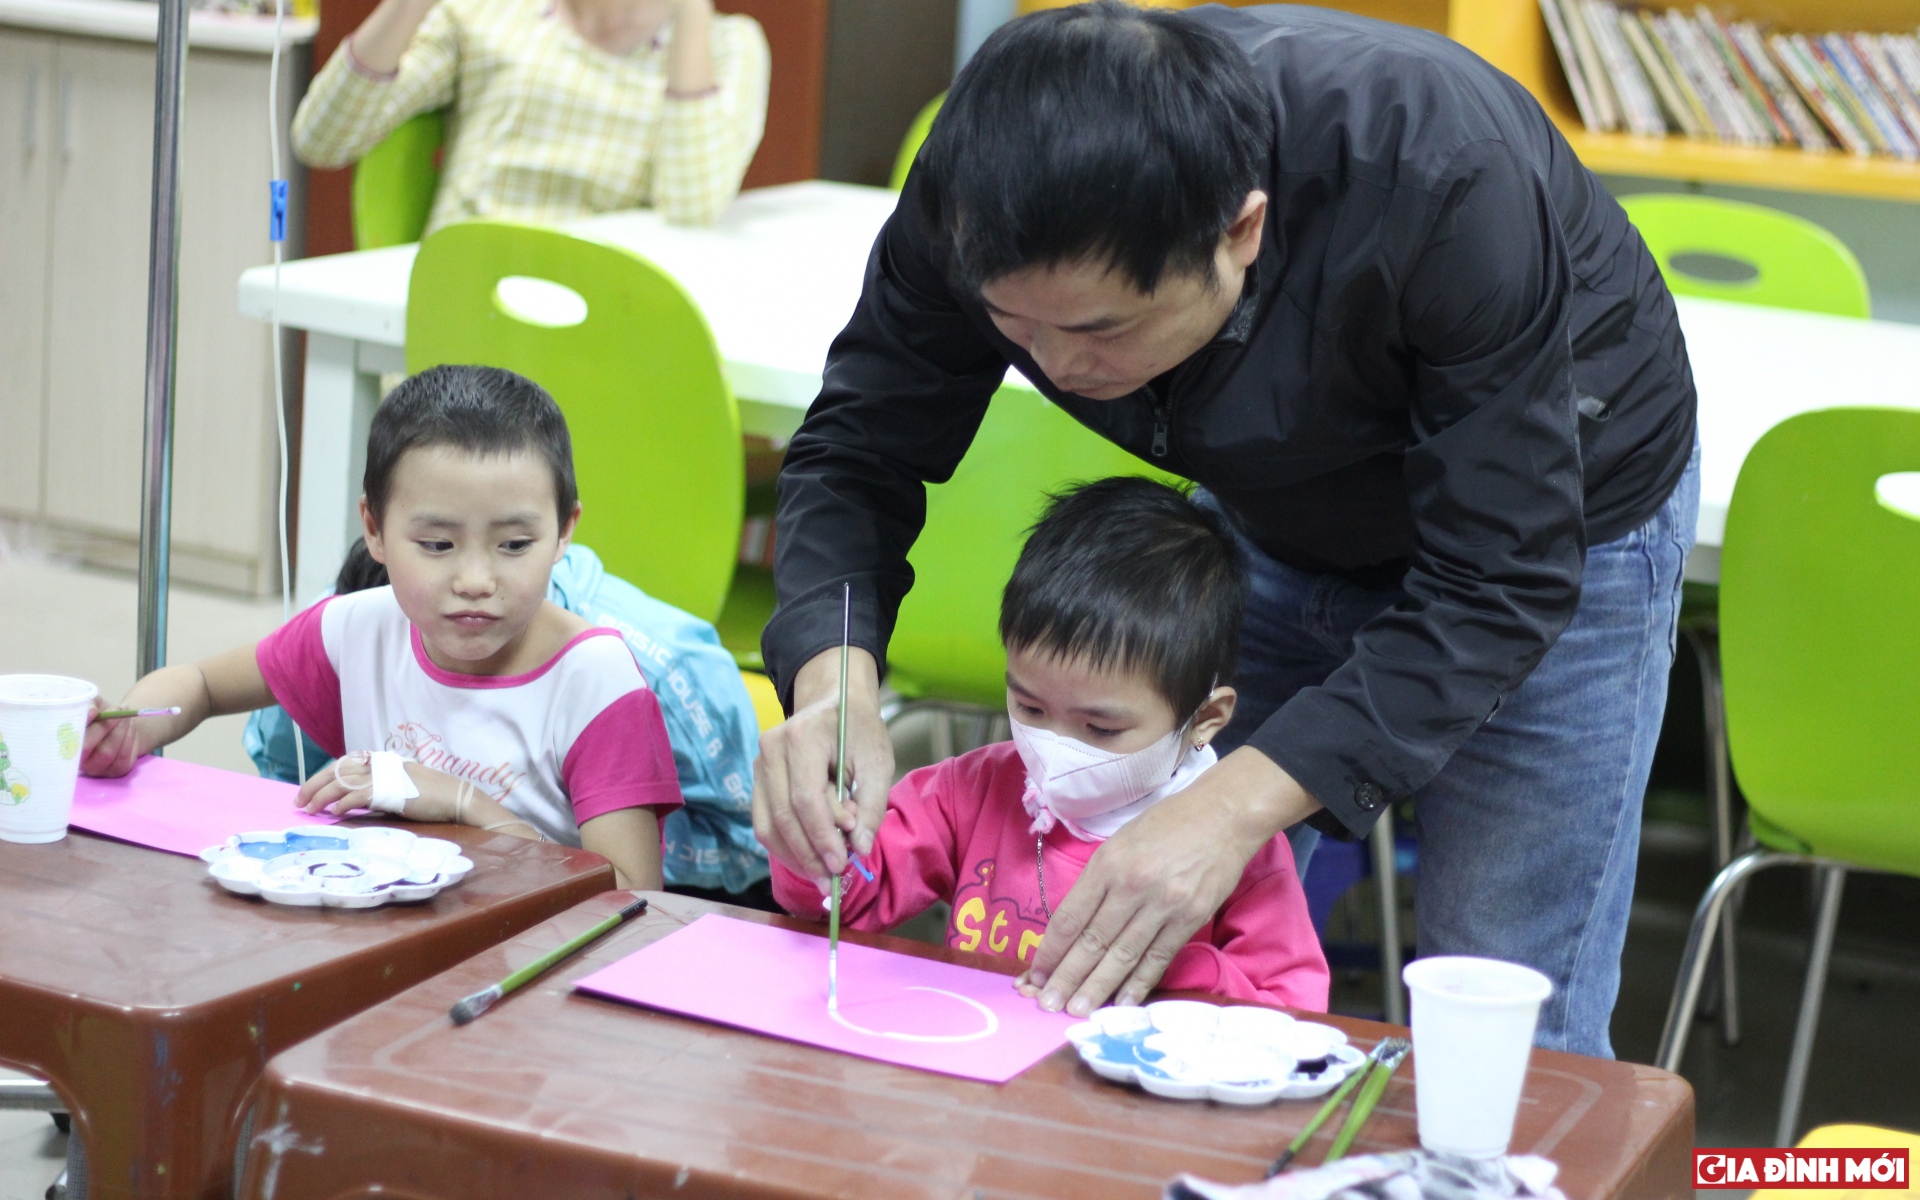 Họa sĩ Nguyễn Tuấn Sơn hướng dẫn cho các em cách vẽ 12 con giáp